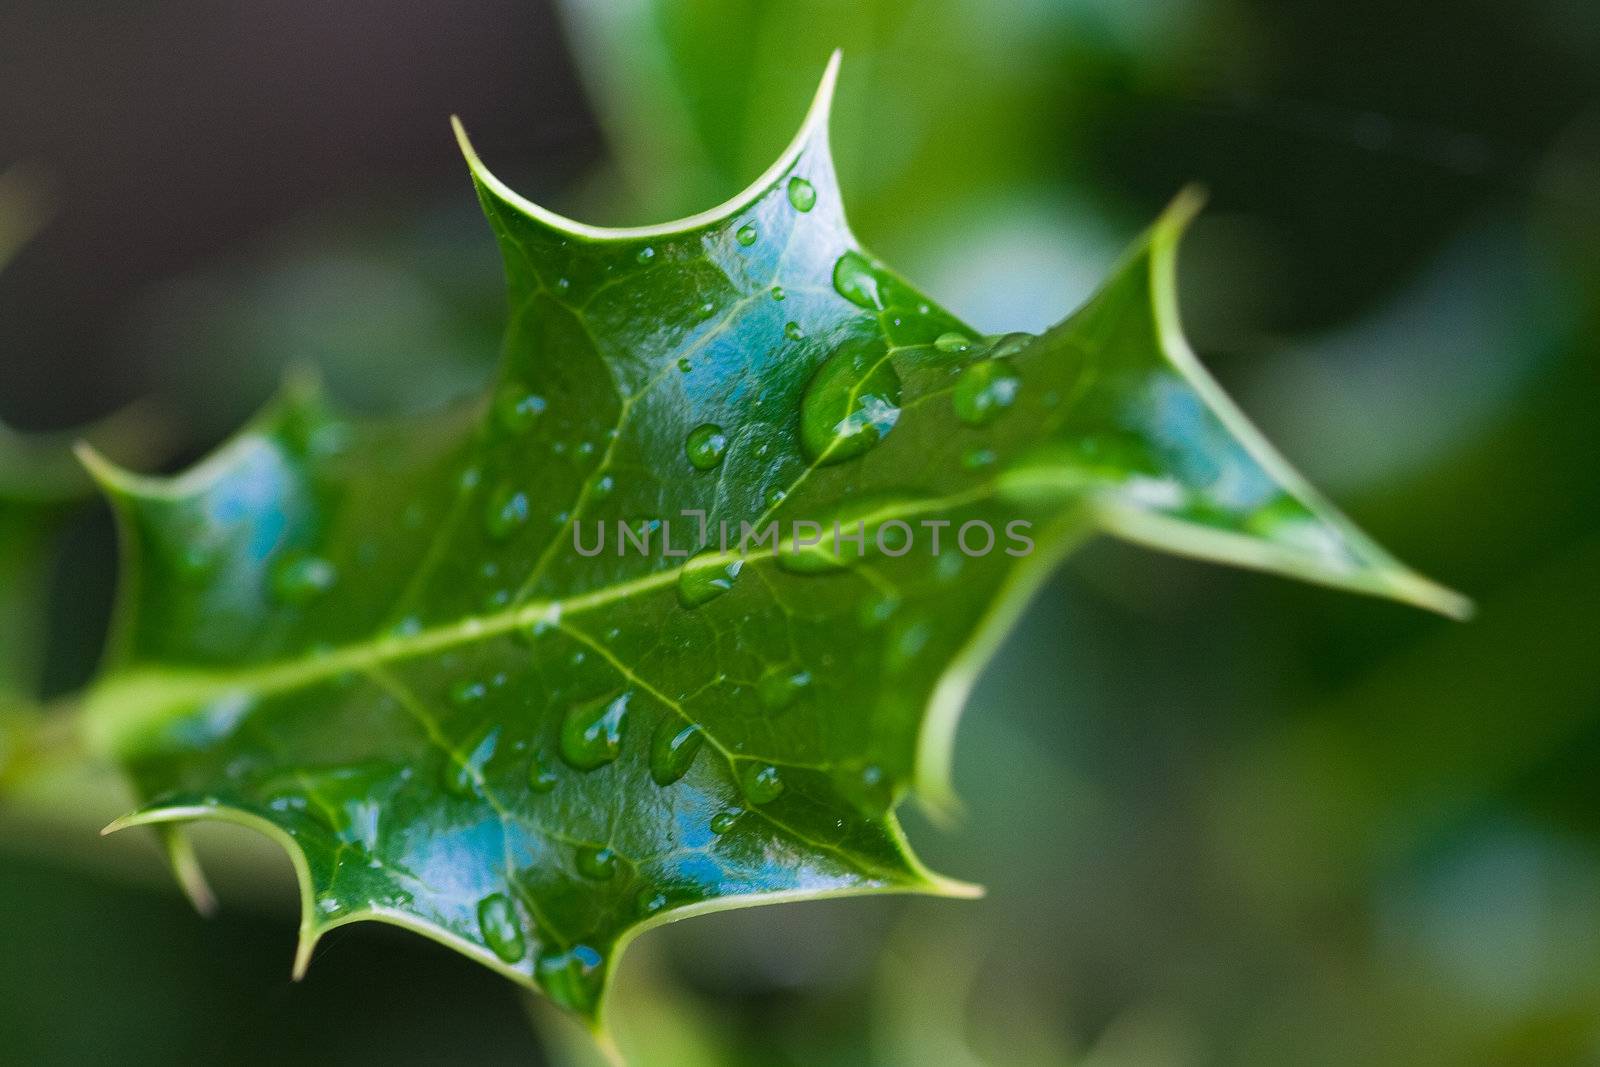 Mahonia Leaf with rain drops